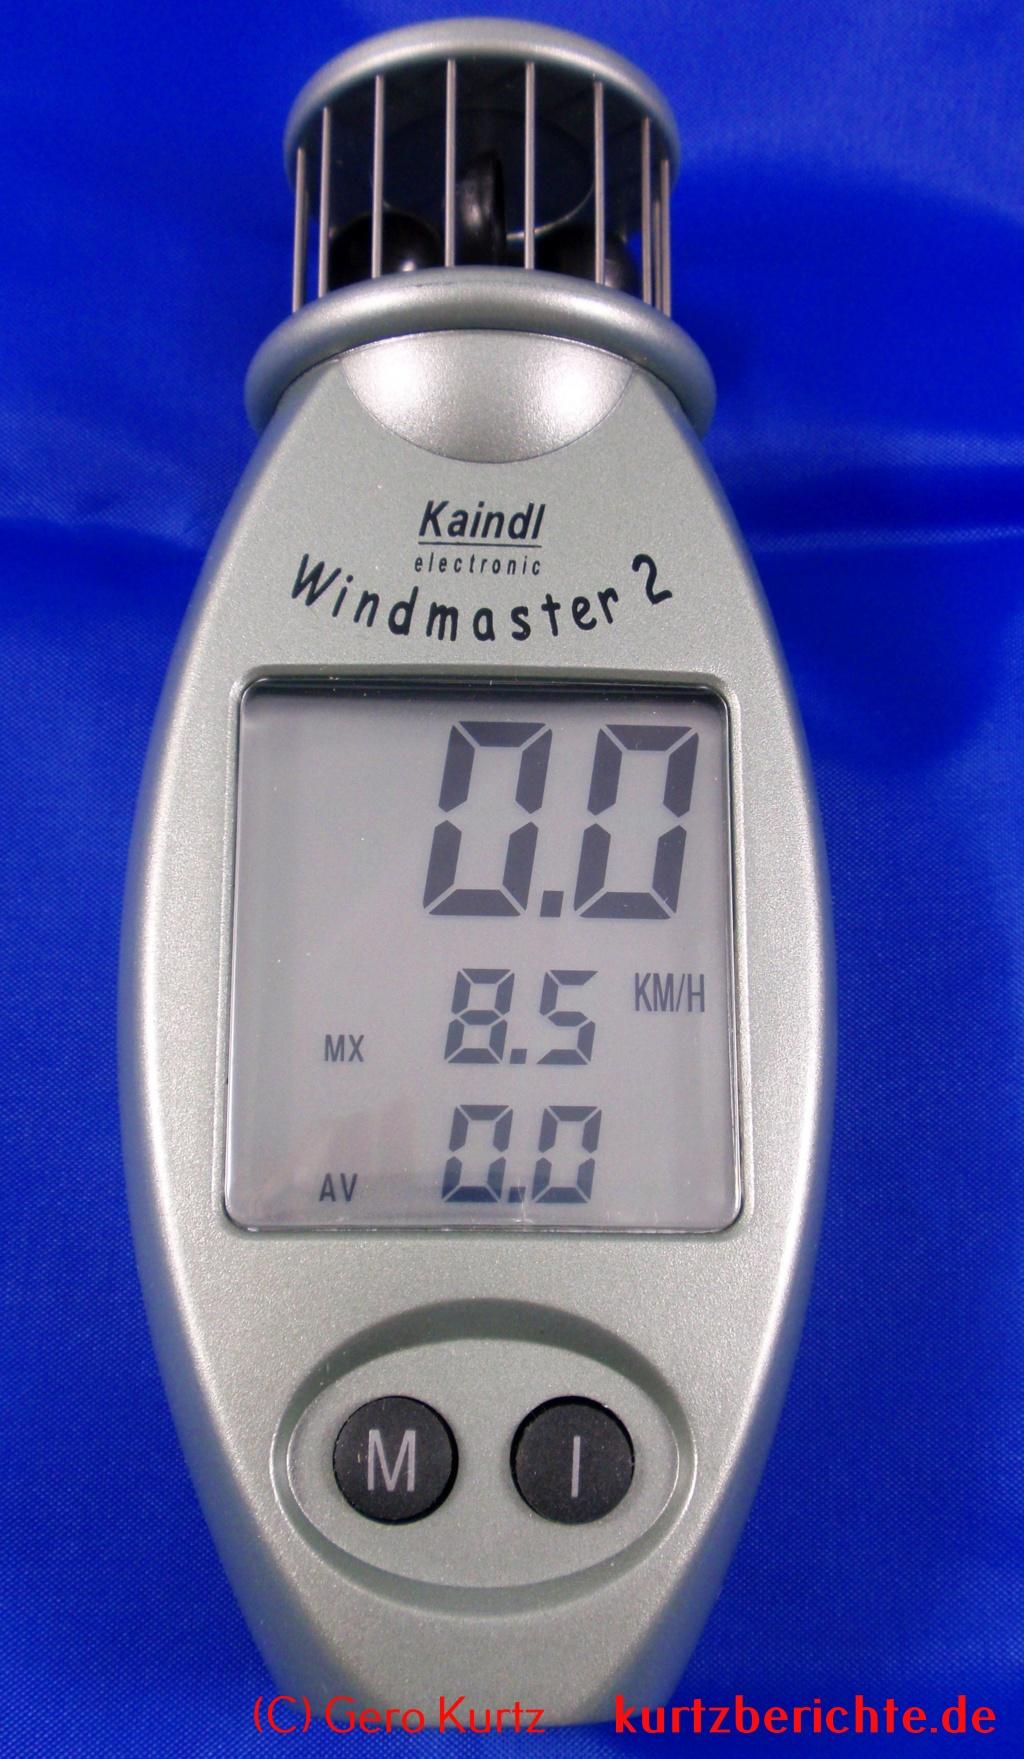 Kaindl Windmaster 2 - LCD Anzeige